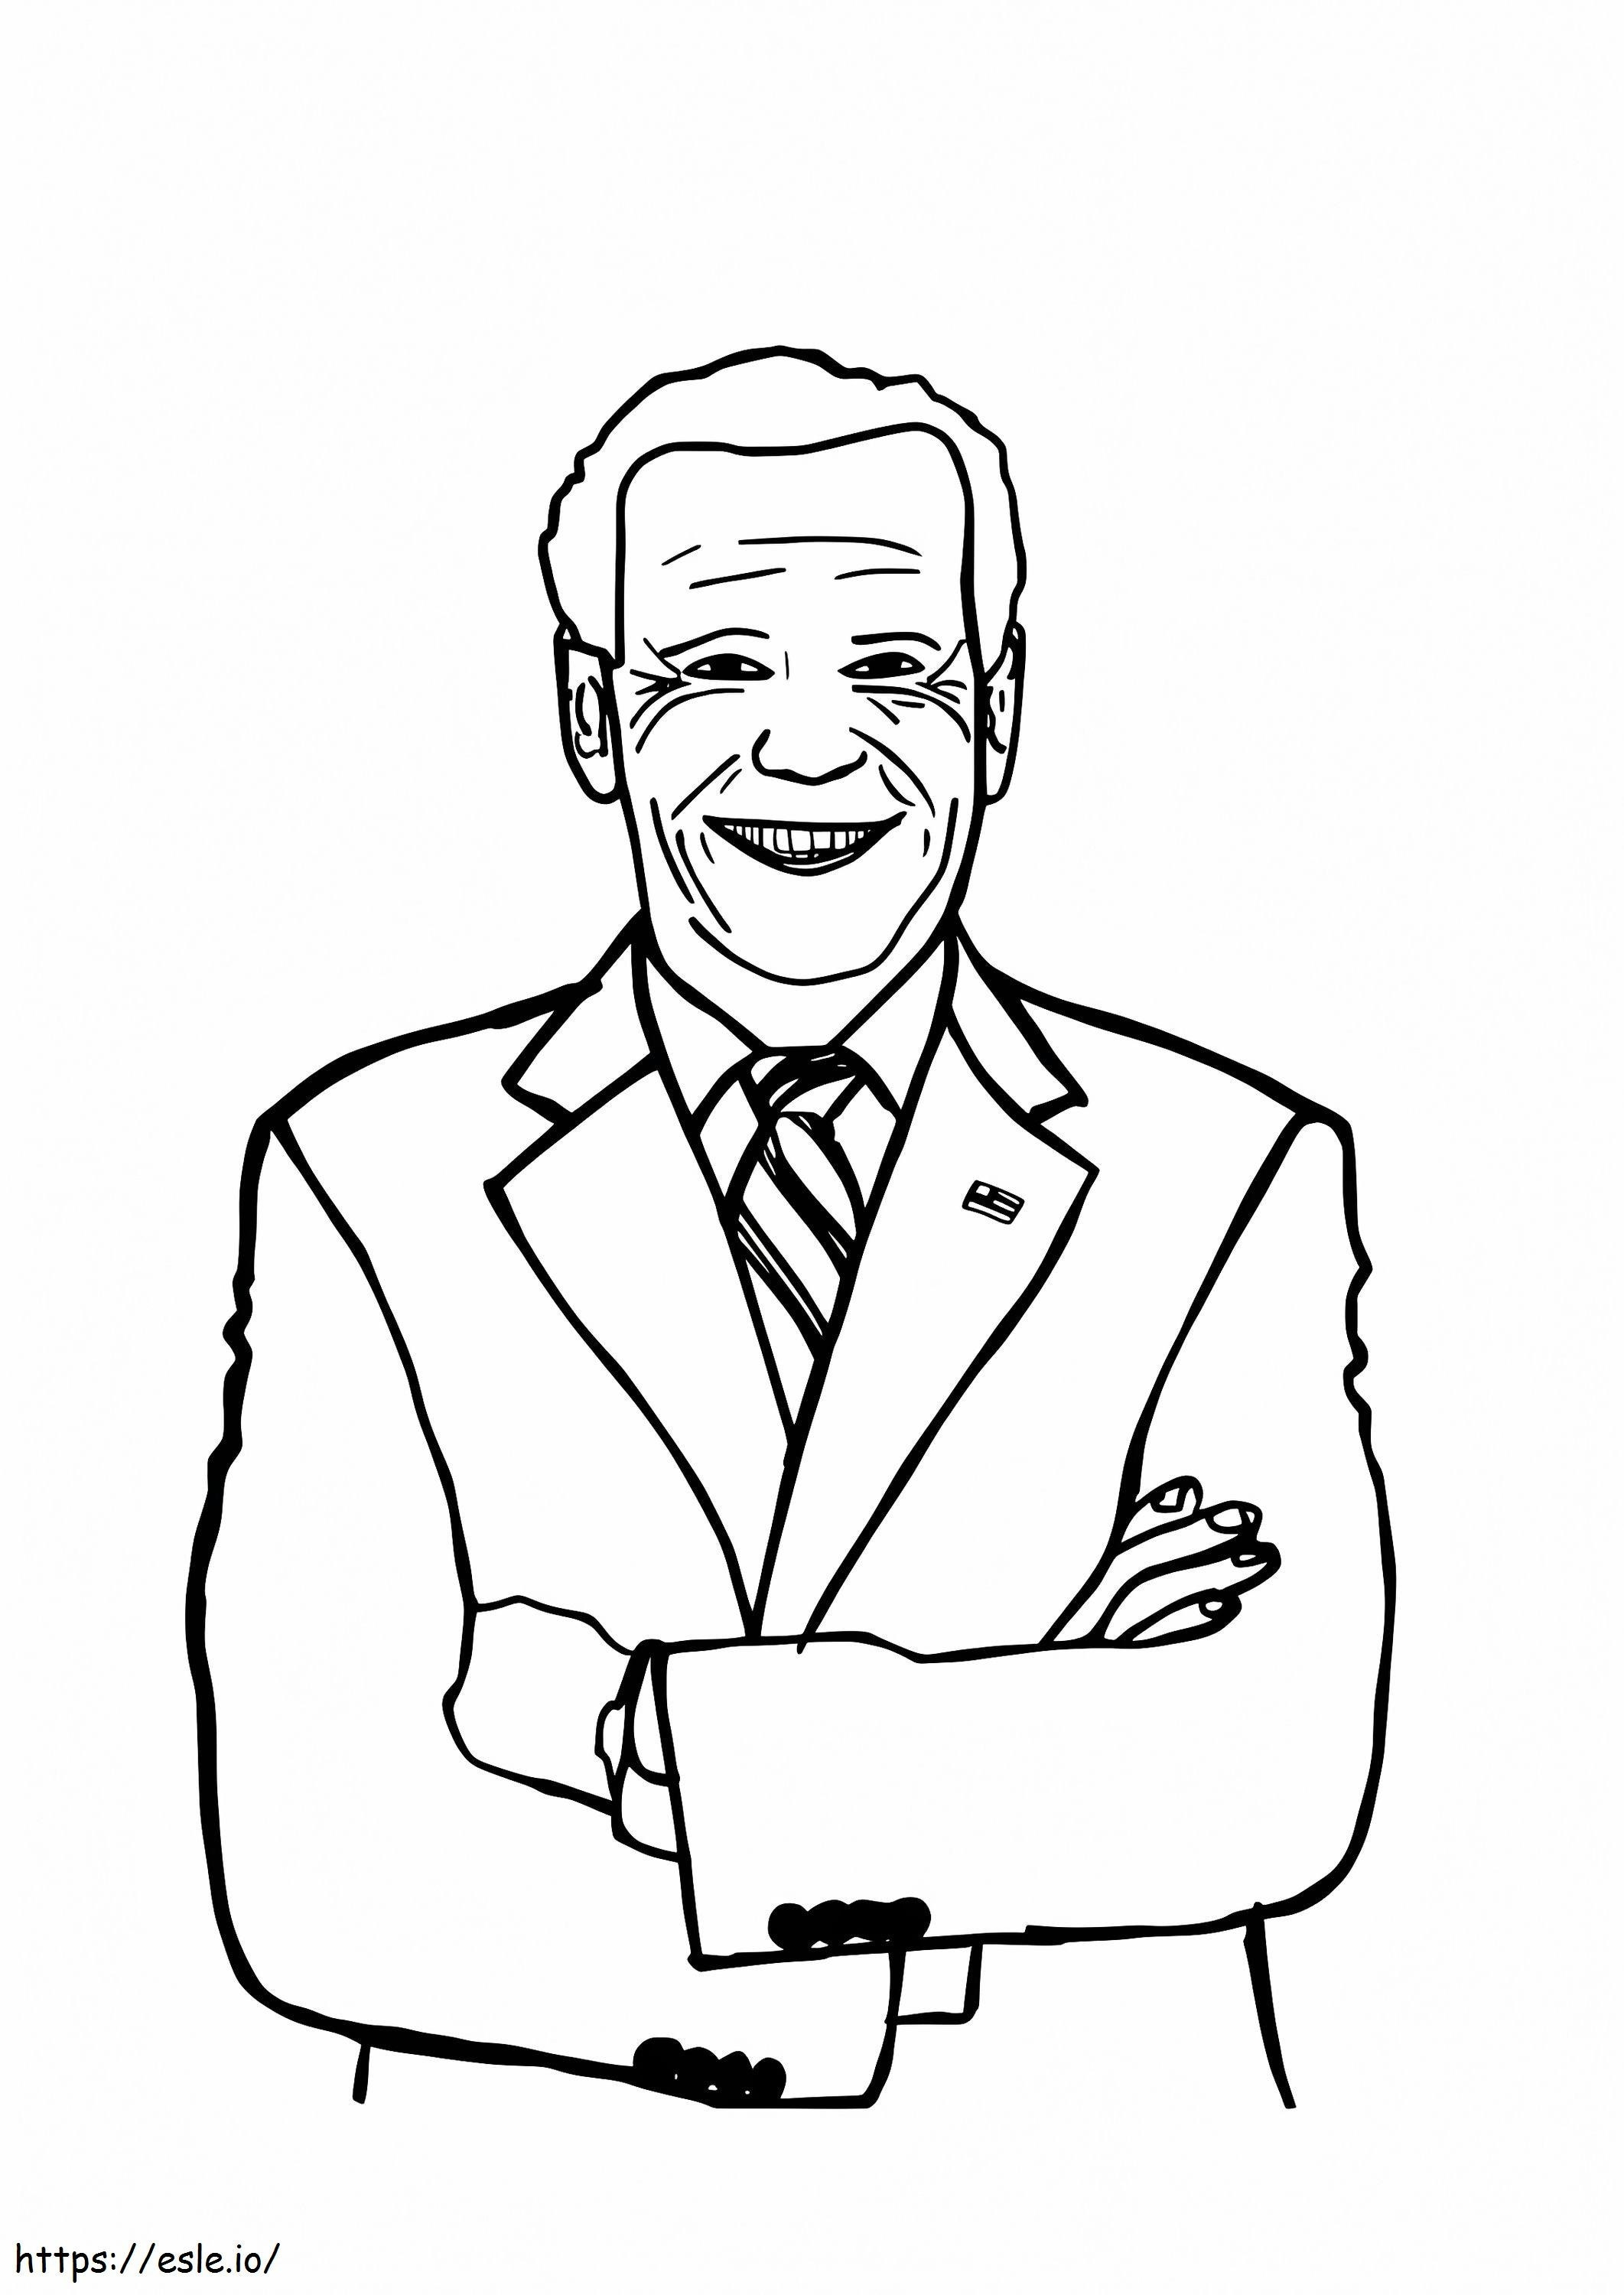 Joe Biden sonriendo para colorear